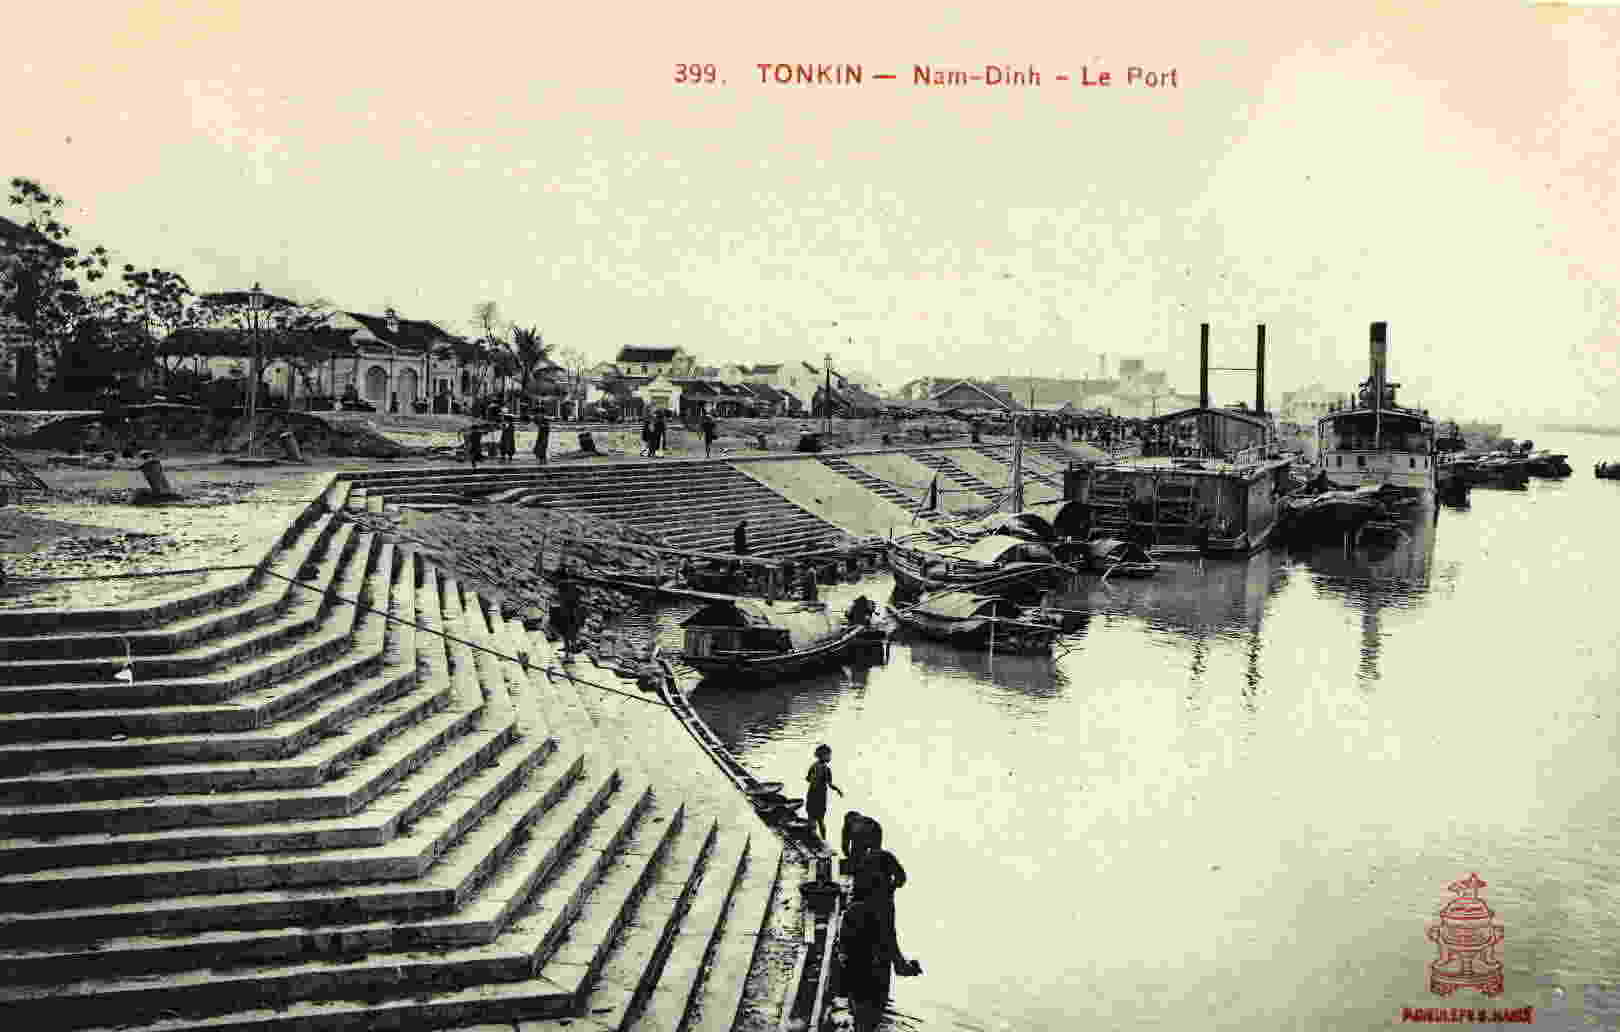 TONKIN - Nam-Dinh - Le Port - Yemen